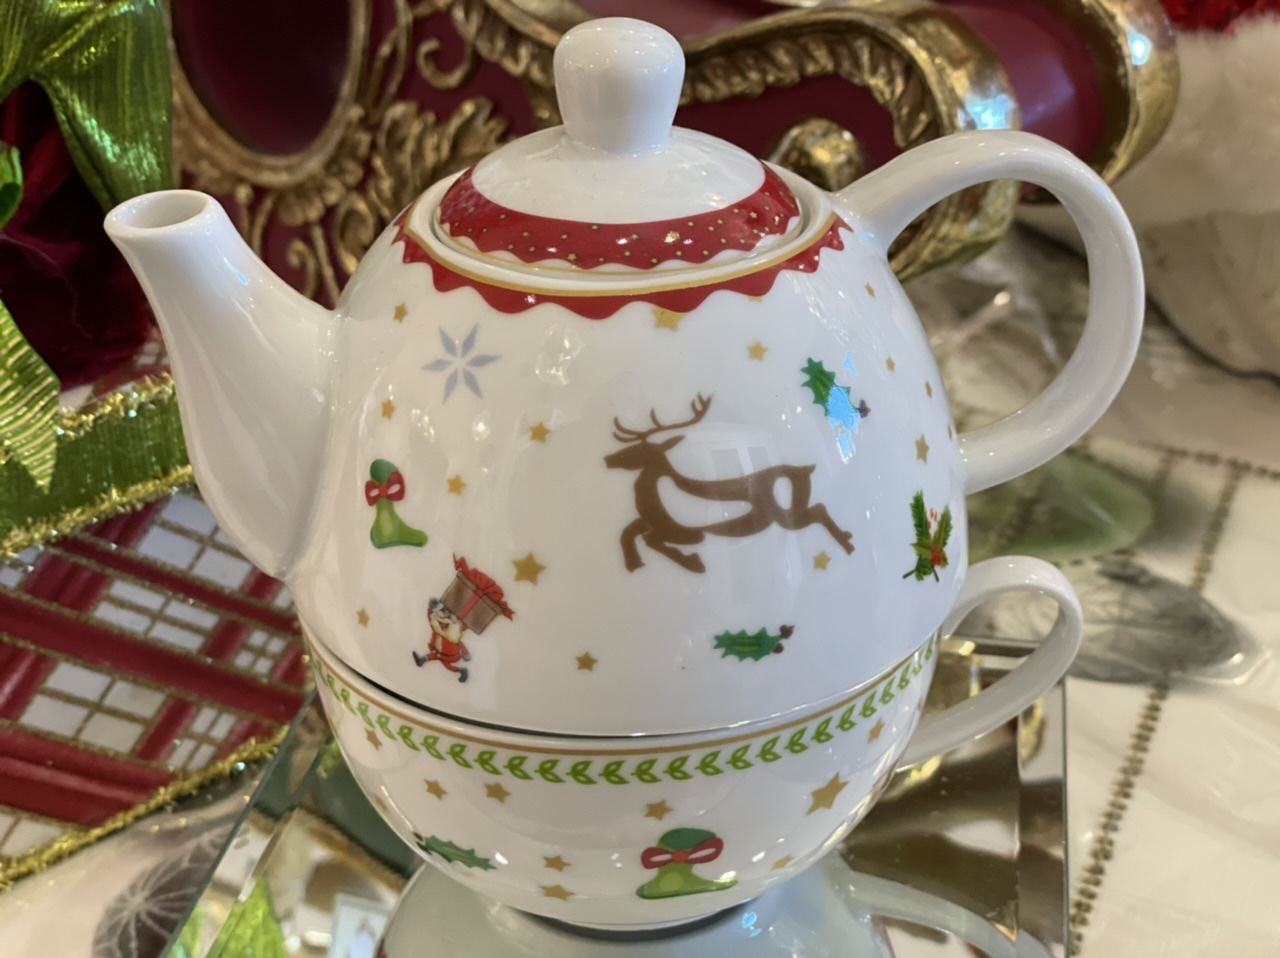 Teapot in porcellana con renne - Fiorentino Home